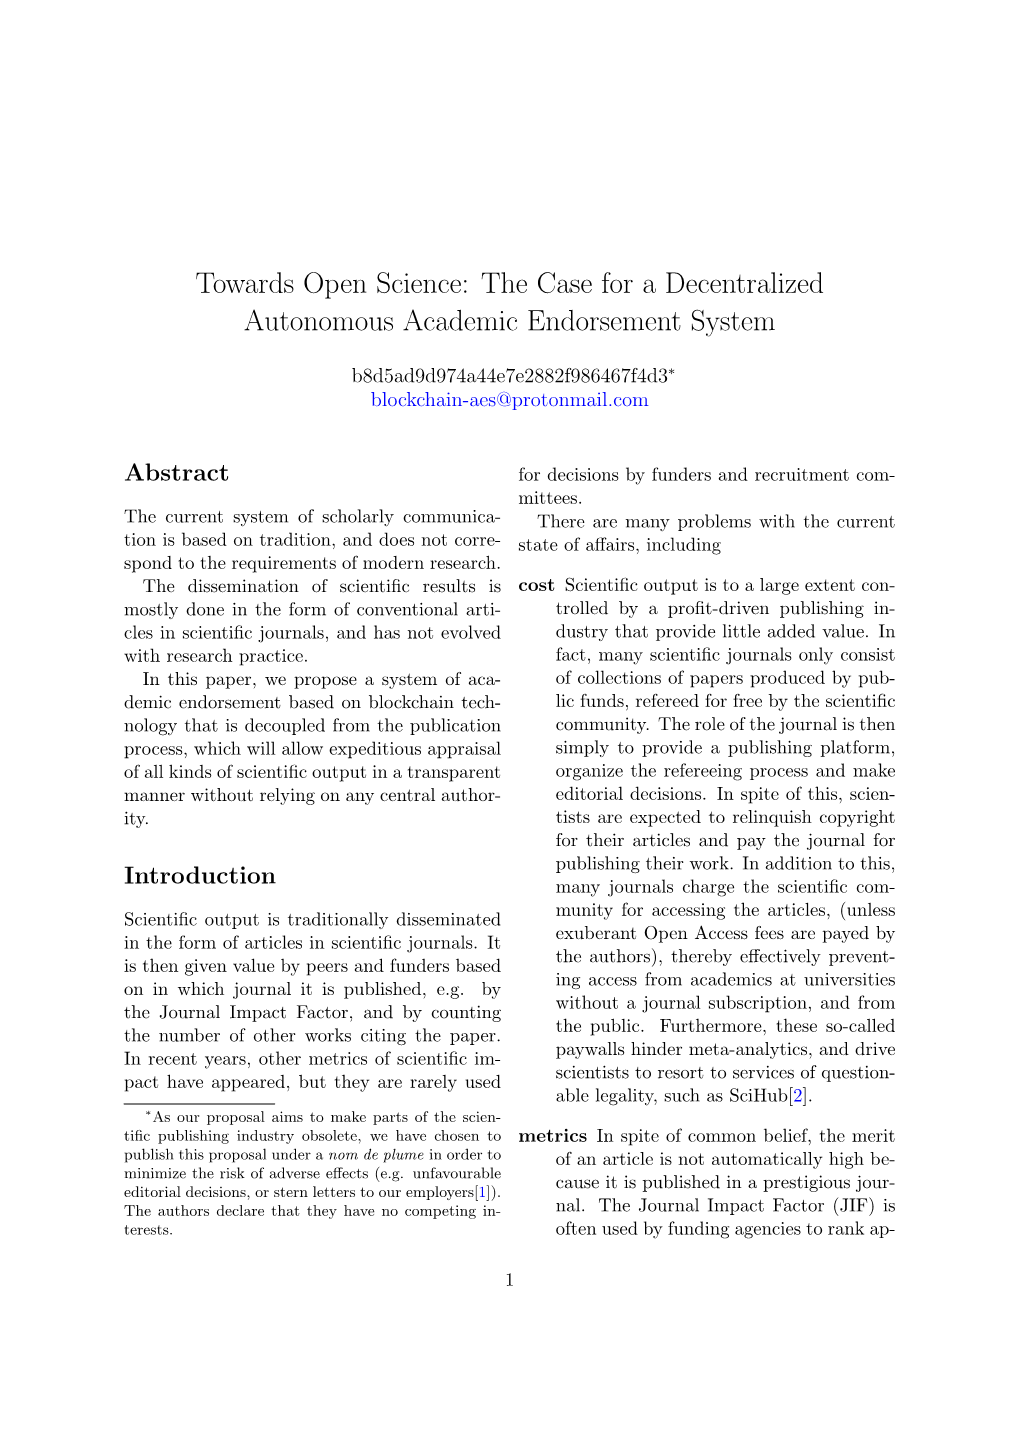 Towards Open Science: the Case for a Decentralized Autonomous Academic Endorsement System